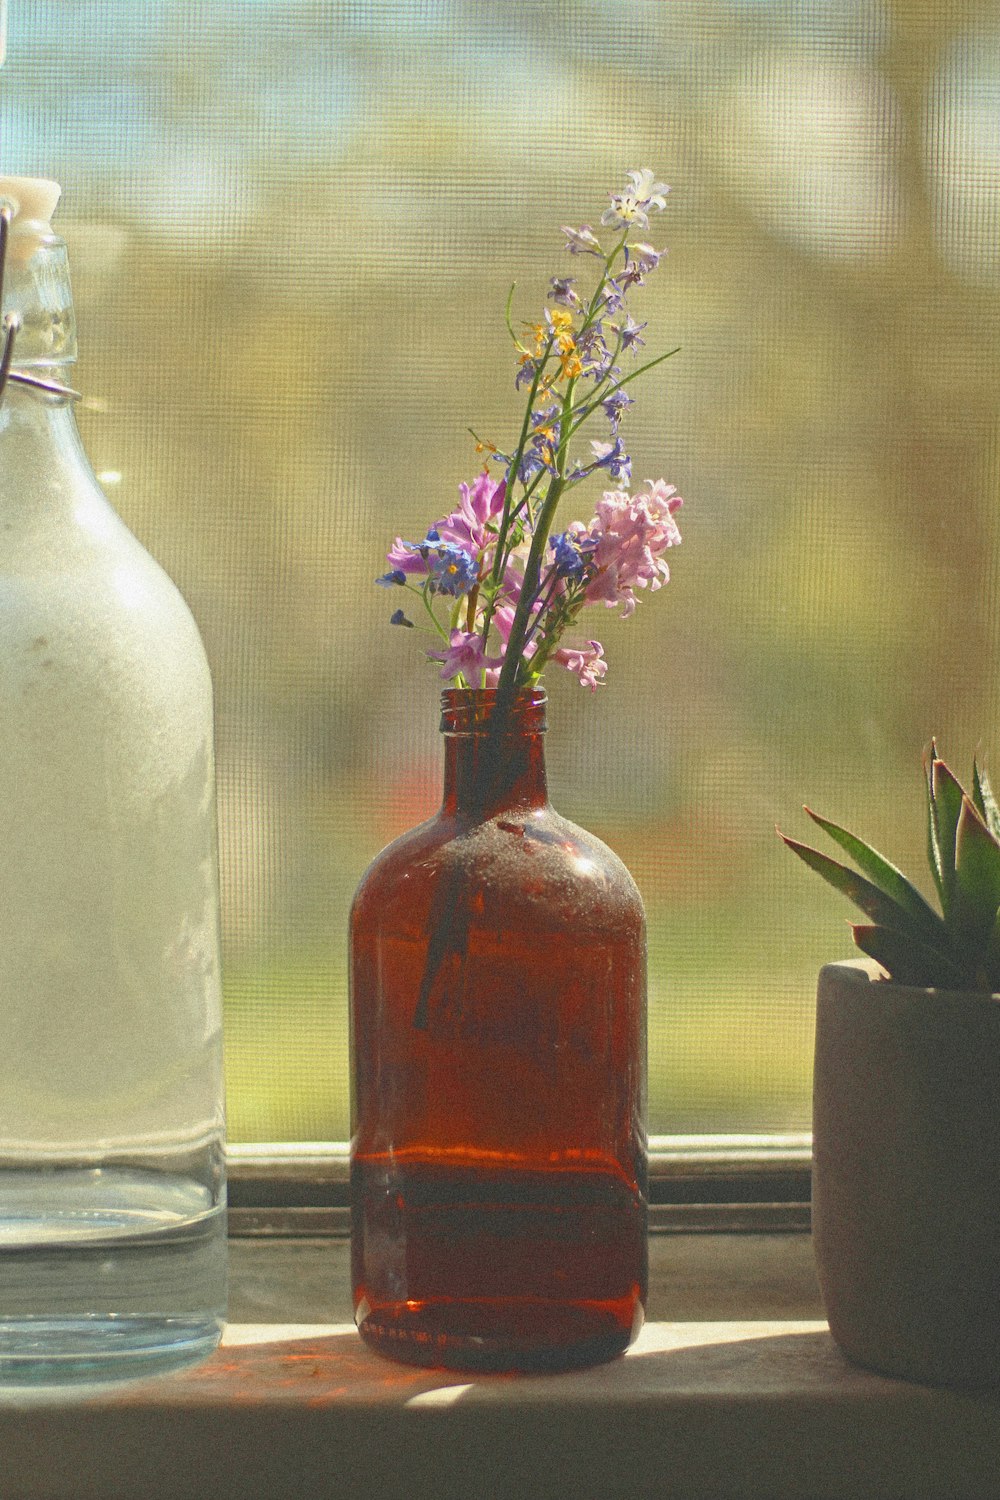 purple flowers in clear glass bottle